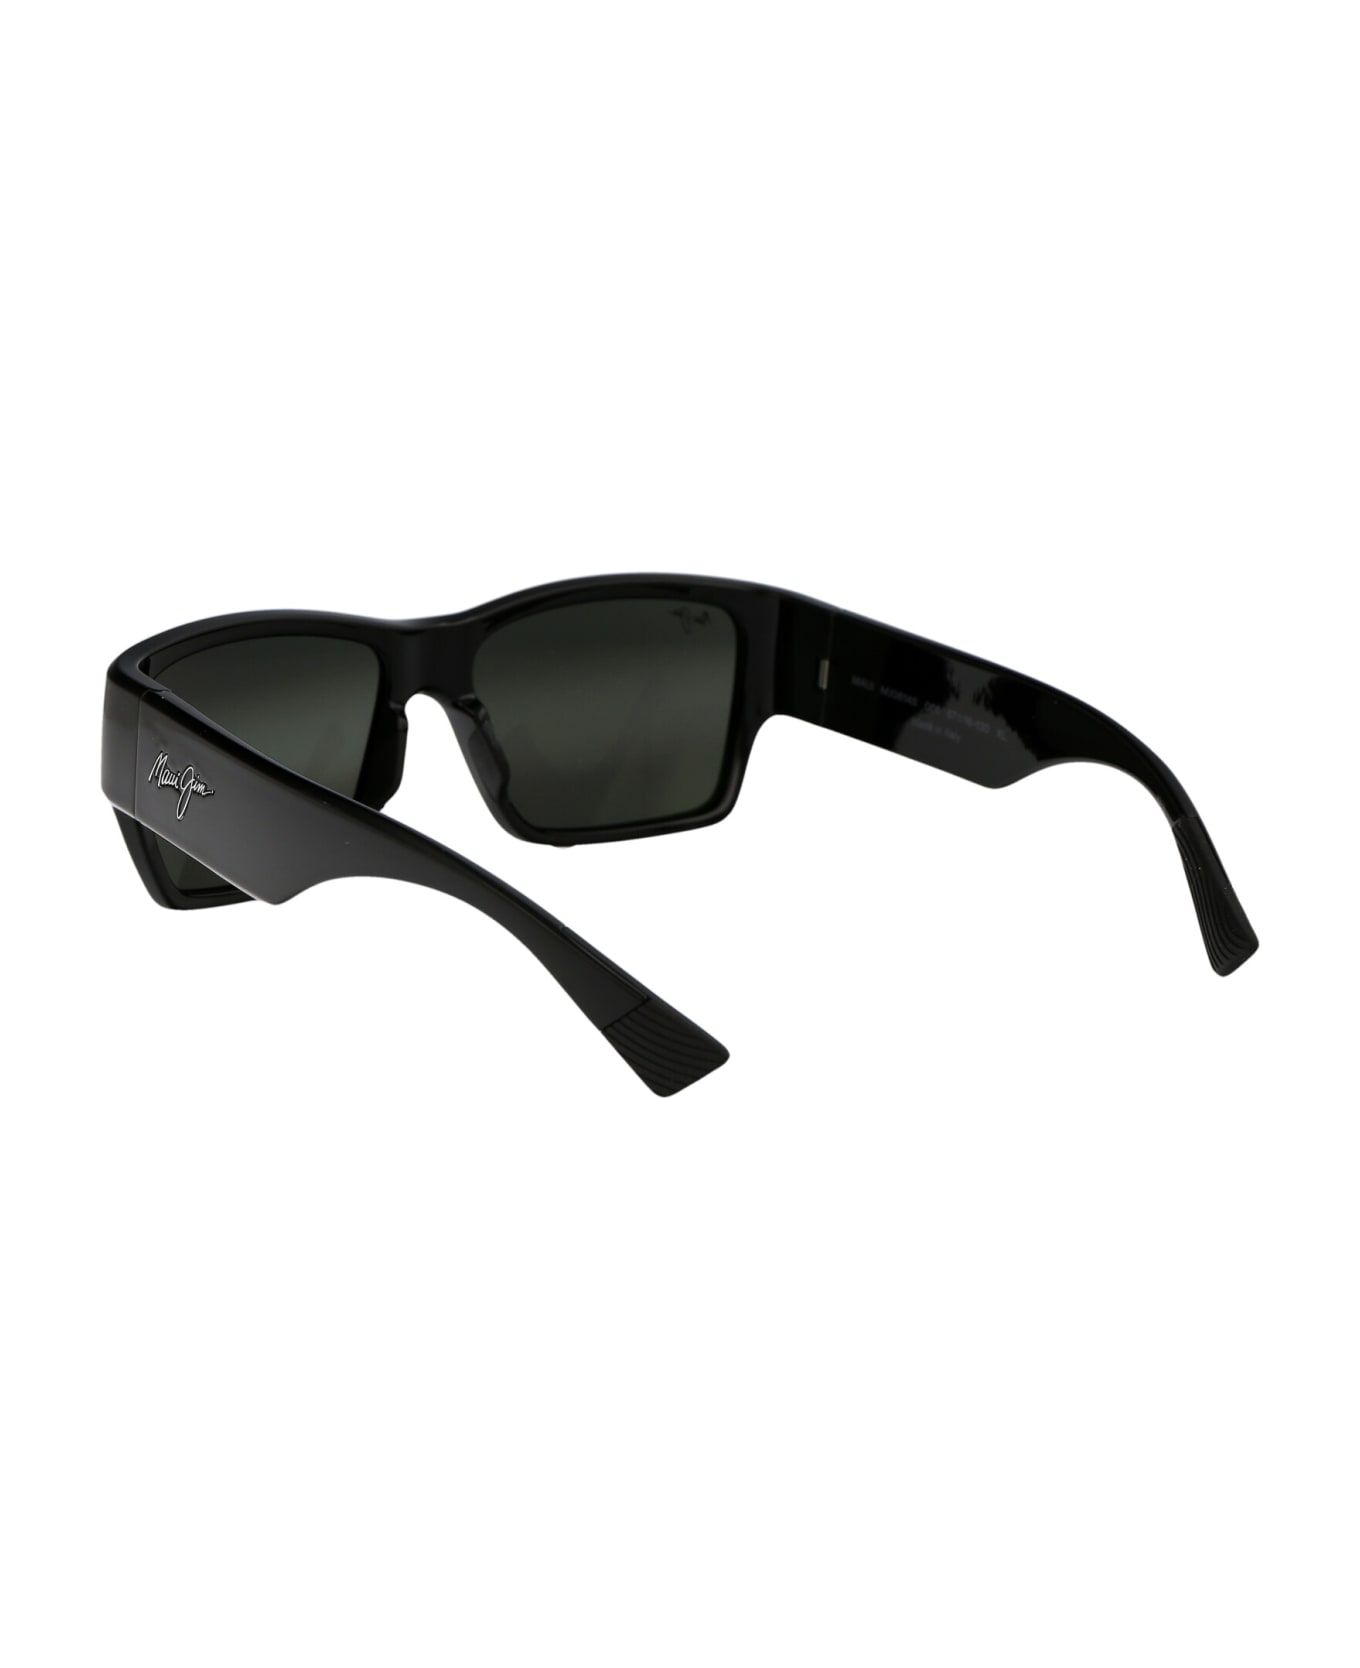 Maui Jim Kaolu Sunglasses - 02 GREY KAOLU SHINY BLACK